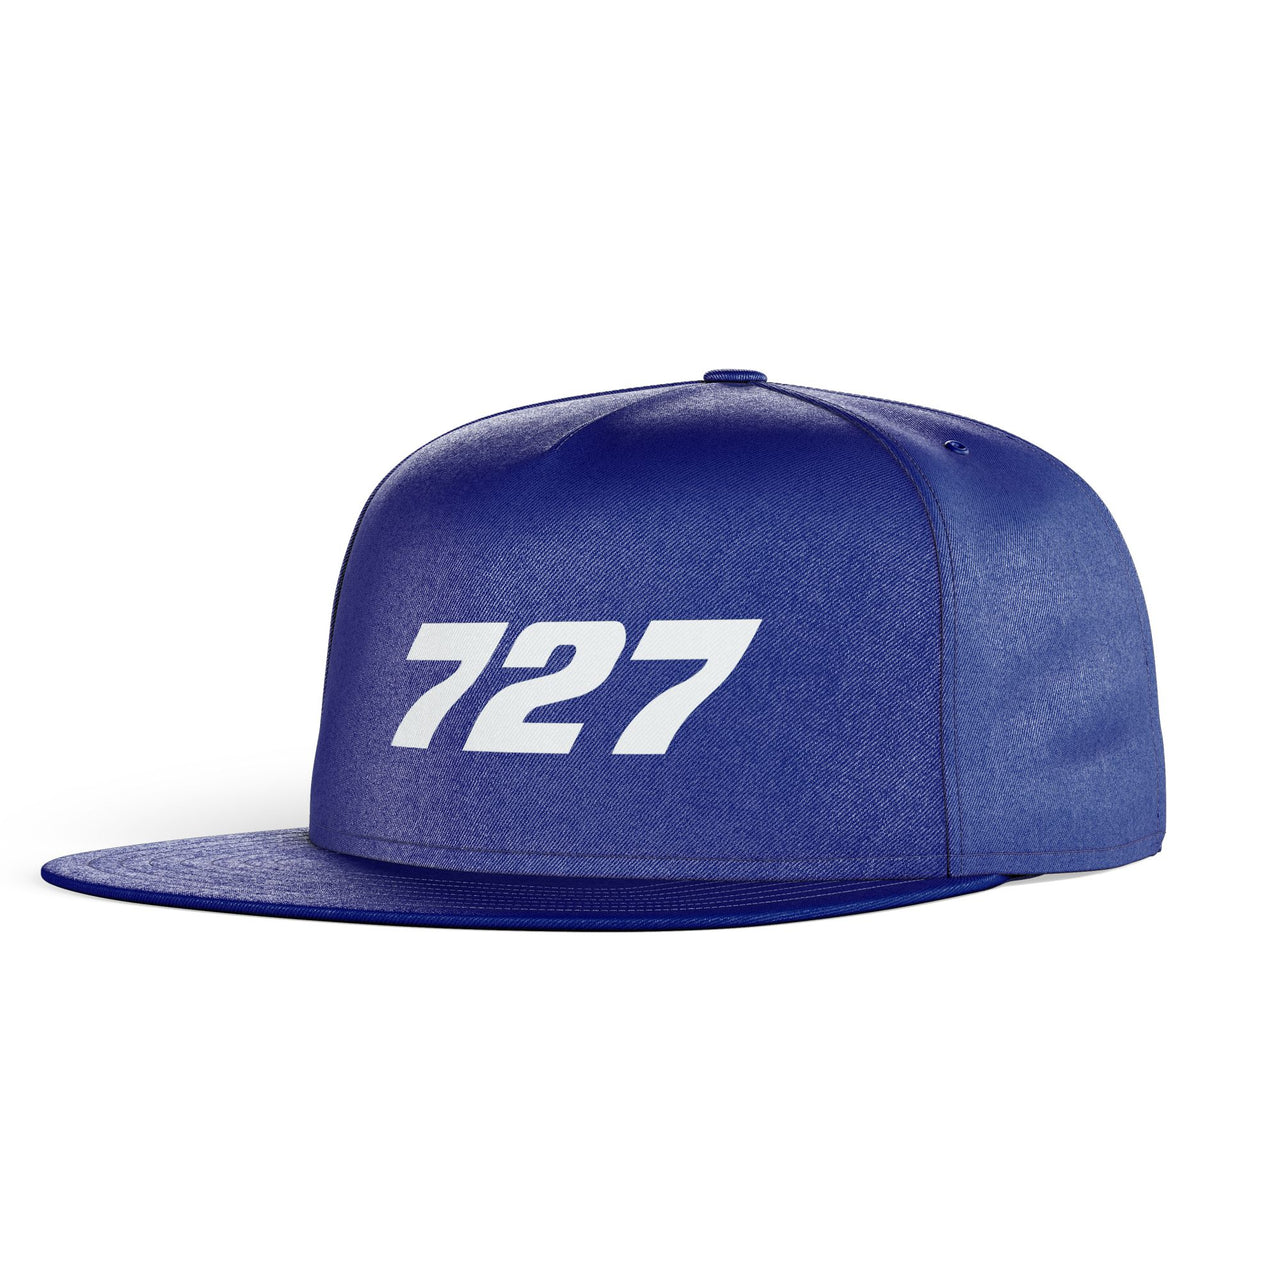 727 Flat Text Designed Snapback Caps & Hats